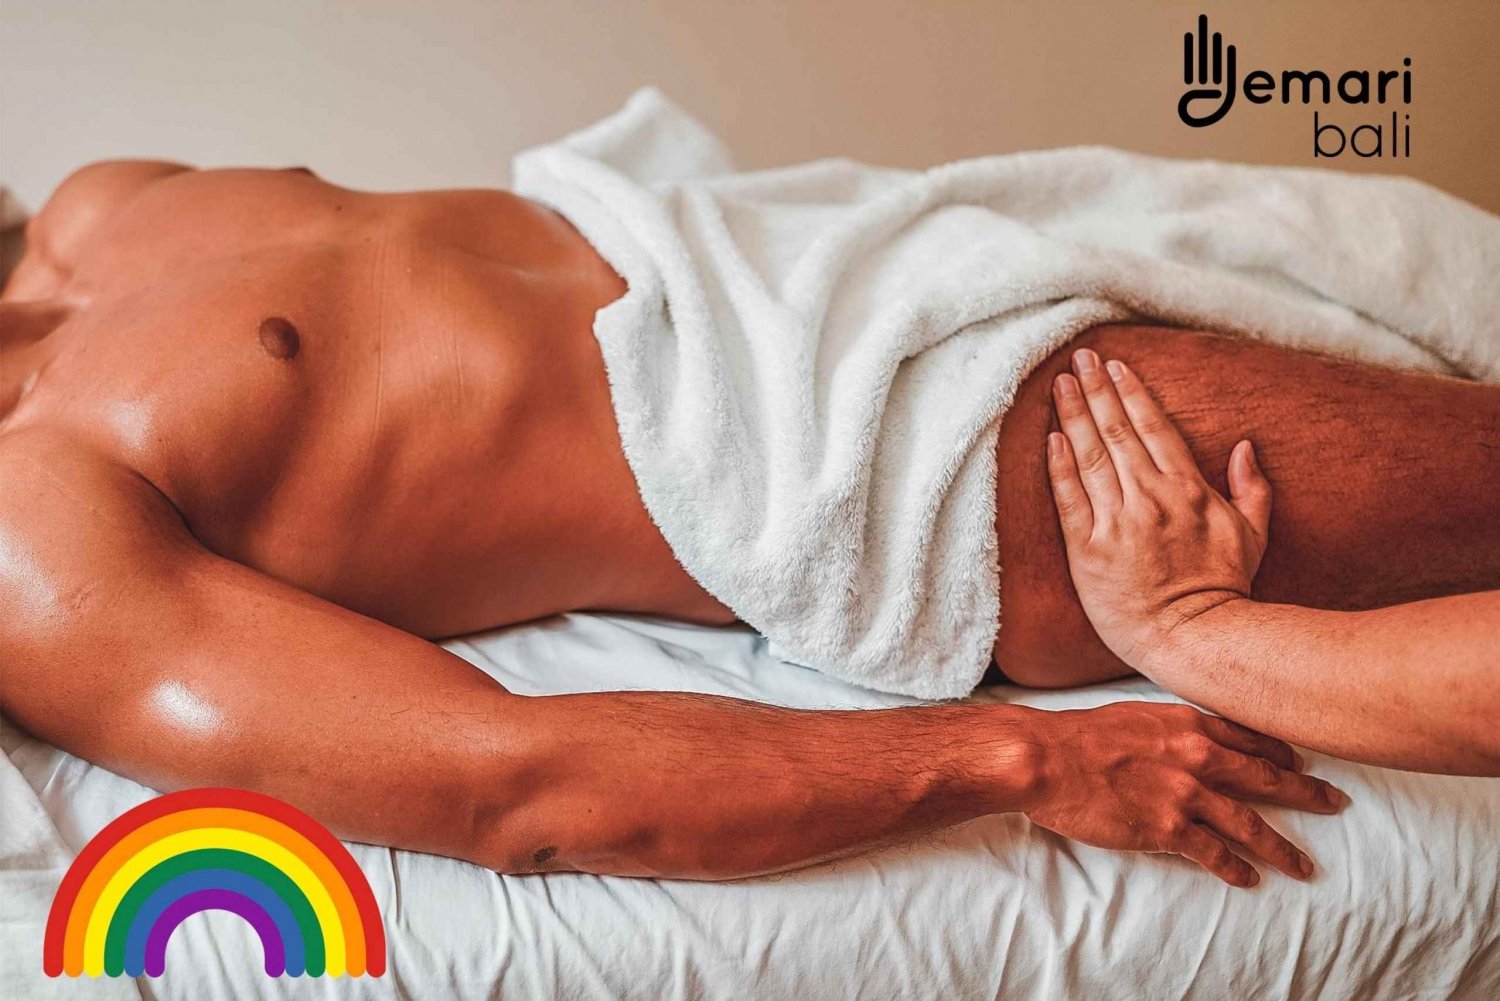 Bali: Homoseksuel helkropsmassage 60 / 120 minutter